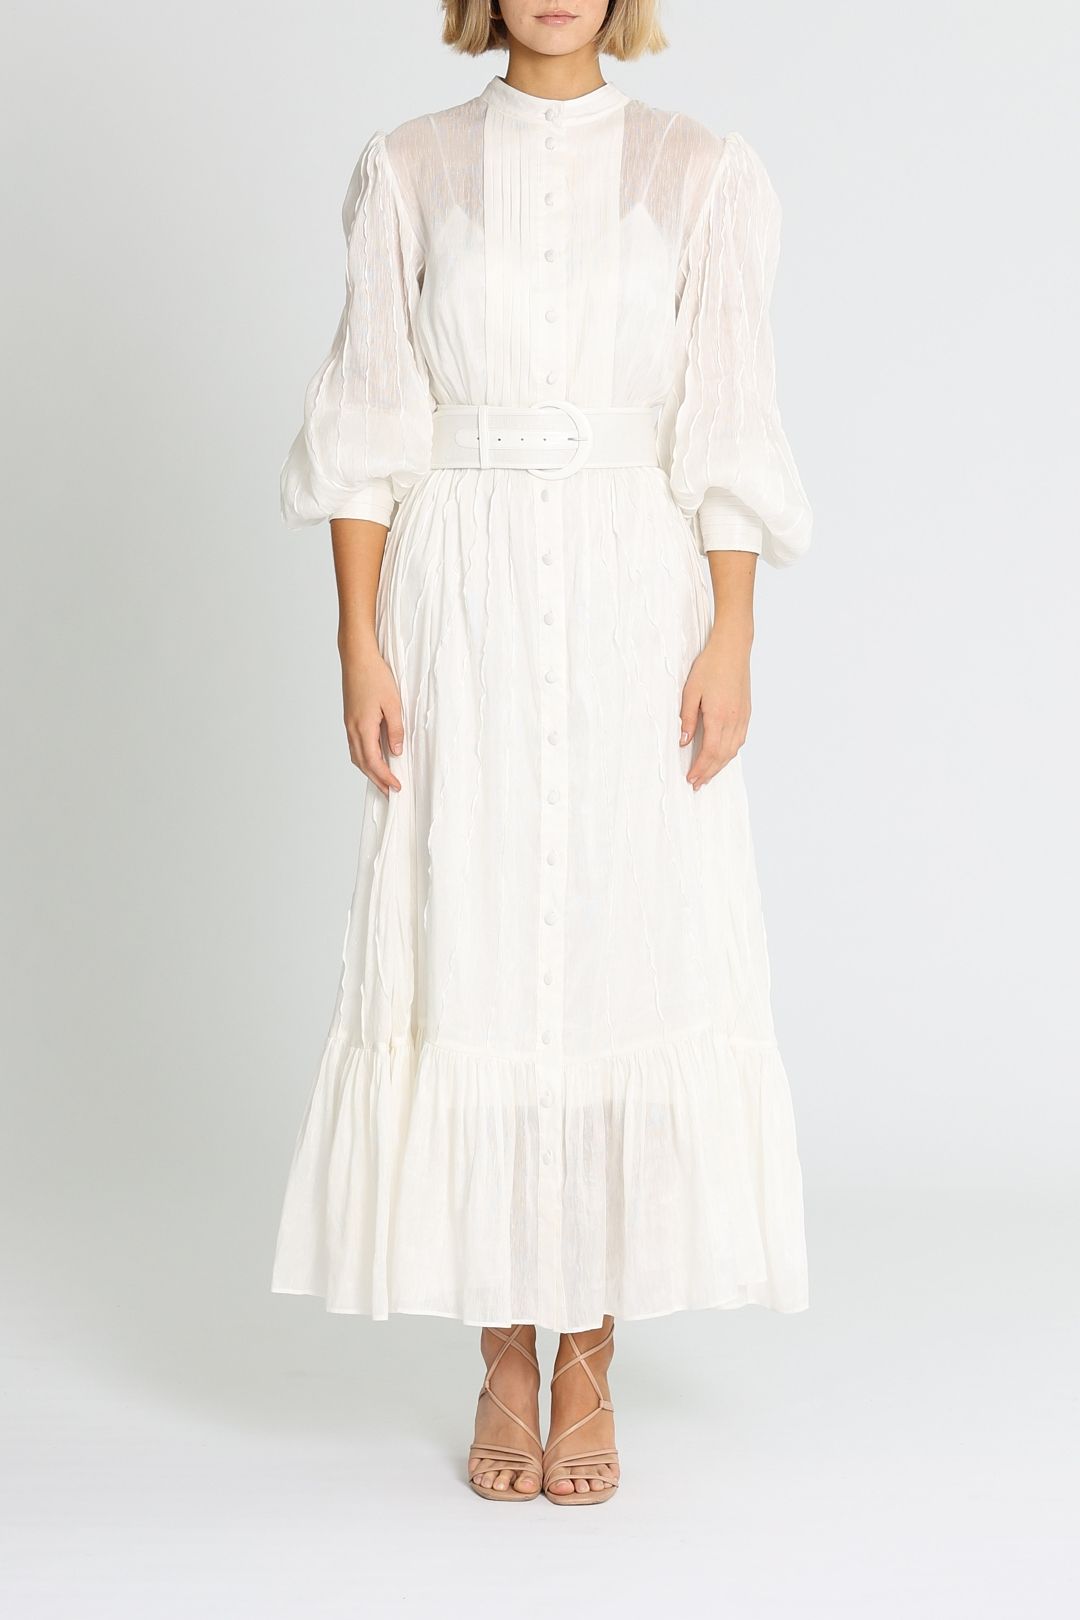 LEO & LIN Dress | Shop Designer LEO & LIN Clothing Online